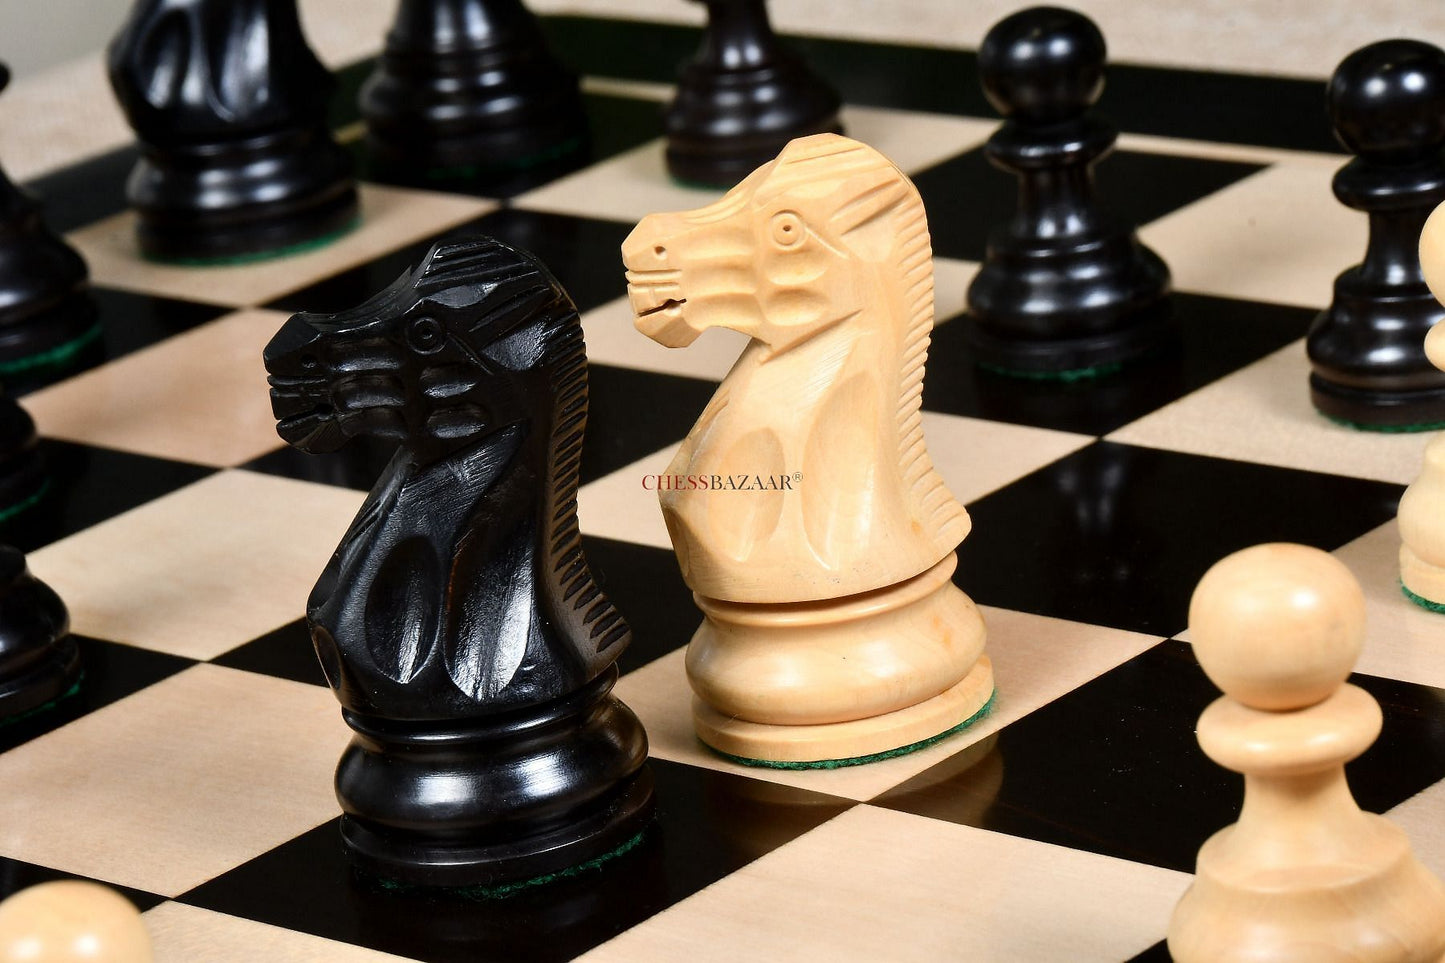 The Smokey Staunton Series Chess Pieces in Ebonized boxwood & Natural Boxwood- 3.8" King